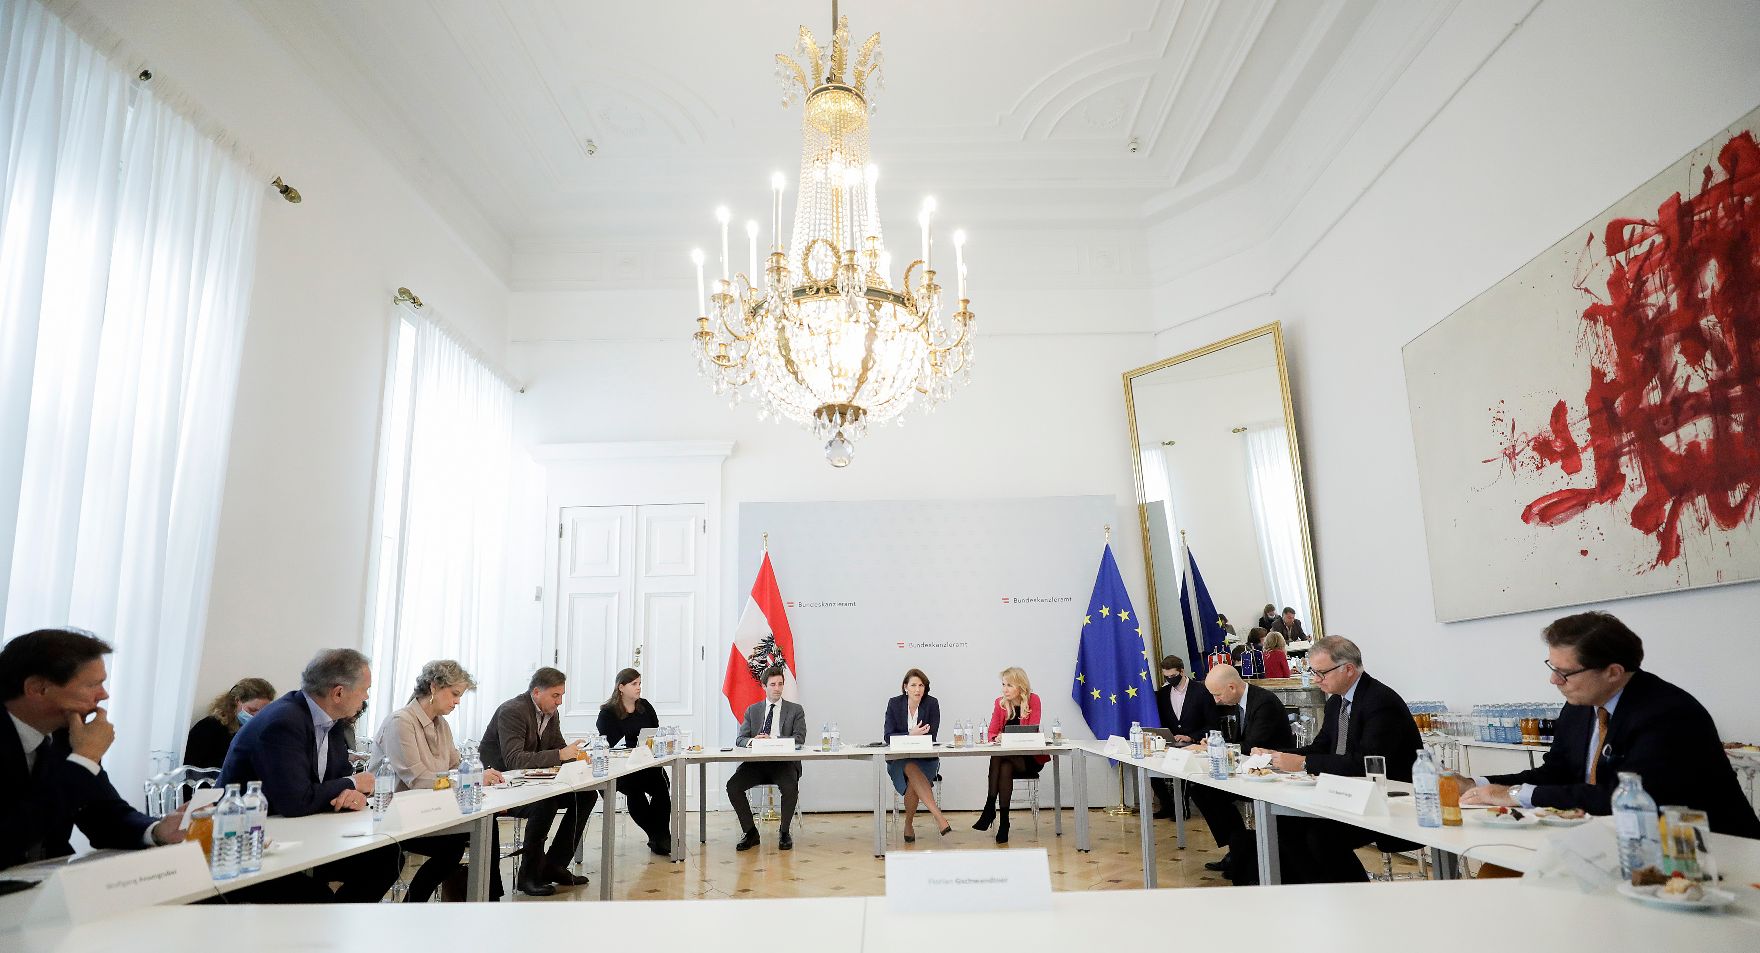 Am 9. Juni 2020 nahm Bundesministerin Karoline Edtstadler am Stakeholder Dialog zum Start von „Unsere Zukunft – EU neu denken“ teil.